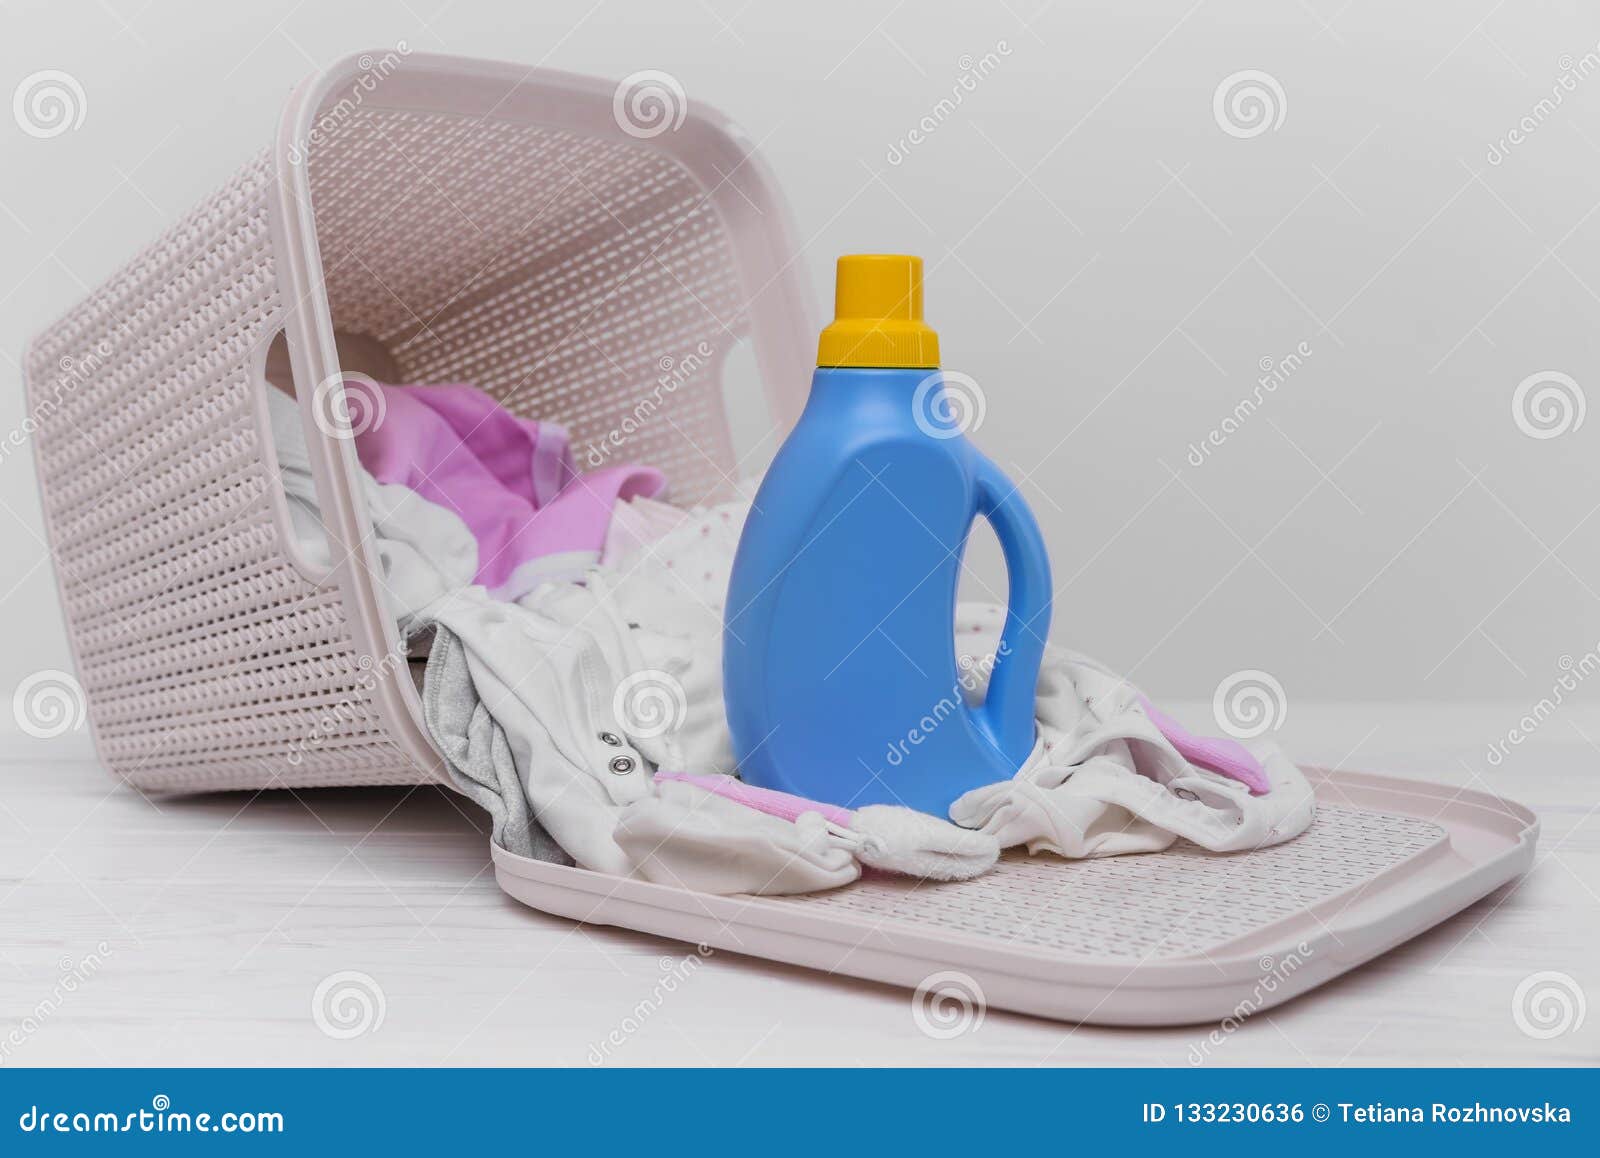 Botella De Detergente Para Ropa En Cesta Sucia Del Bebé Foto de archivo - Imagen de compartimiento, lifestyle: 133230636